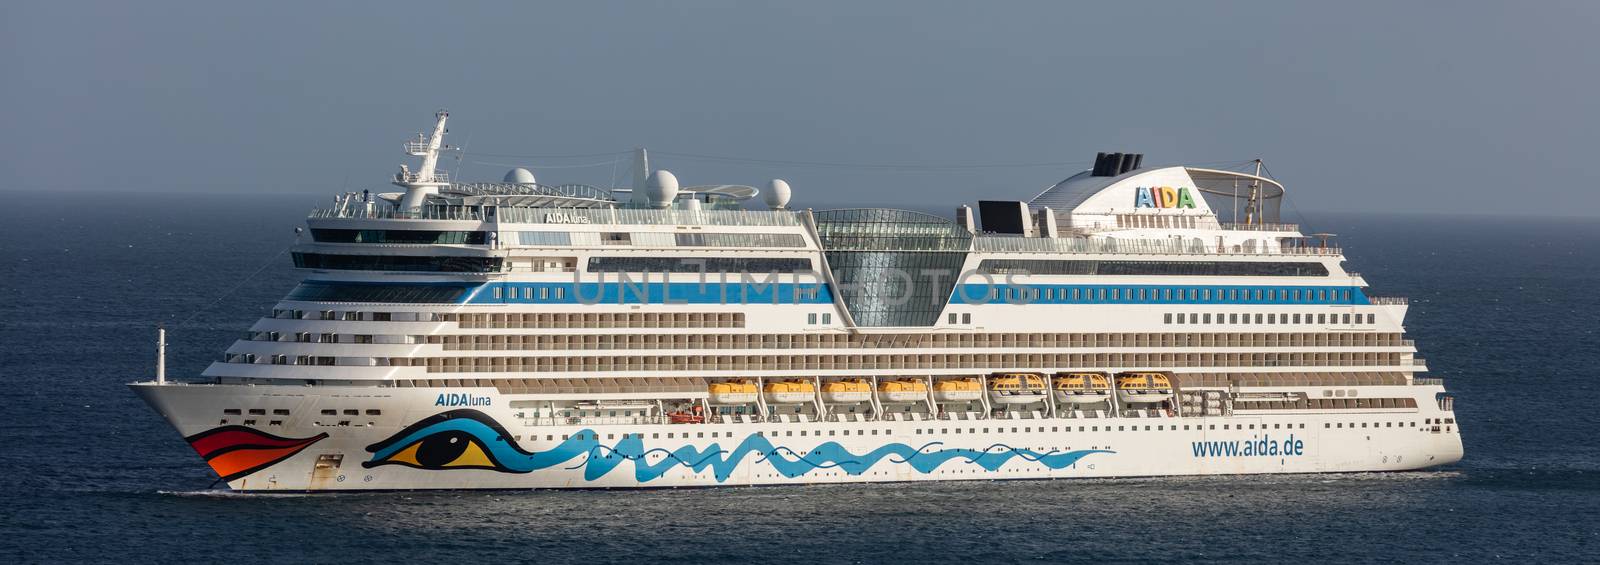 Carlisle Bay, Barbados, West Indies - May 16, 2020: Aida Luna cruise ship anchored next to Barbados